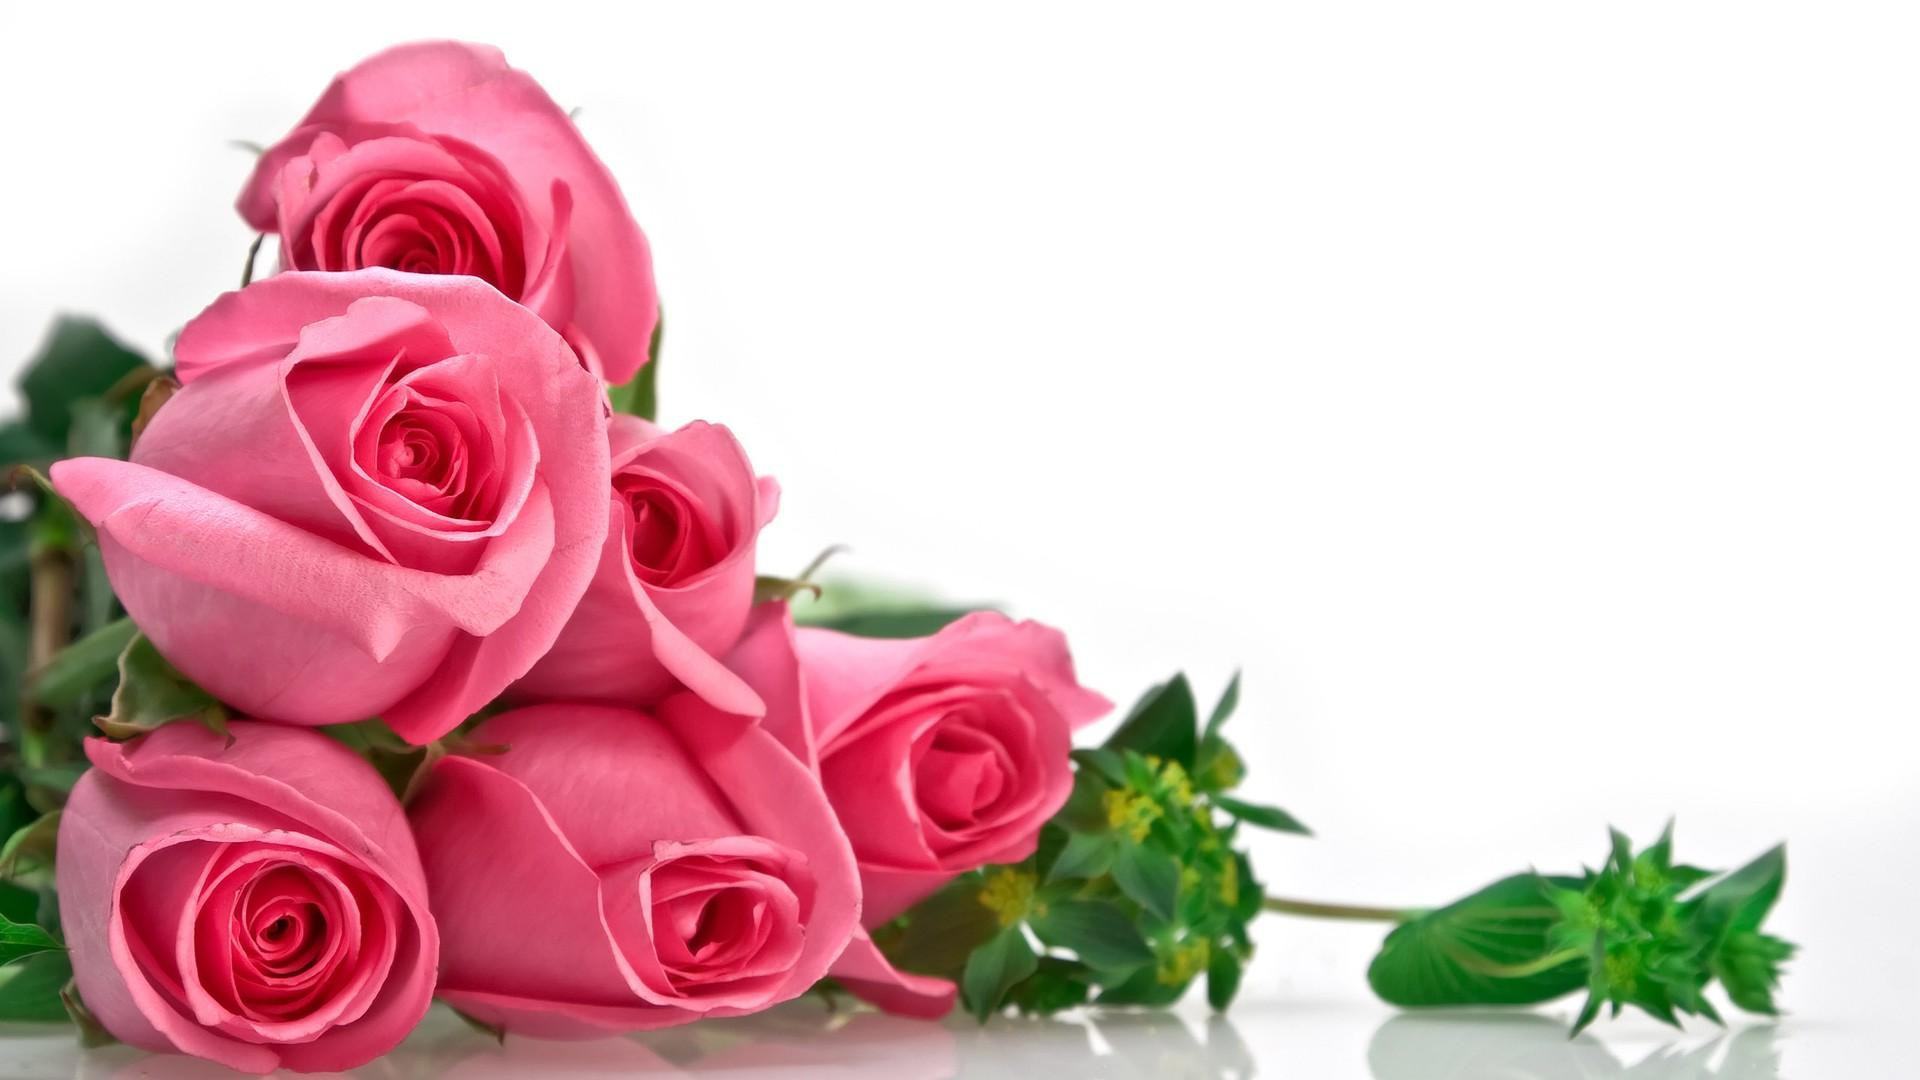 Hoa hồng: Bạn đang tìm kiếm một bức ảnh tuyệt đẹp về hoa hồng? Hãy xem hình ảnh vàng óng của những đoá hoa hồng trên nền đen nhé.